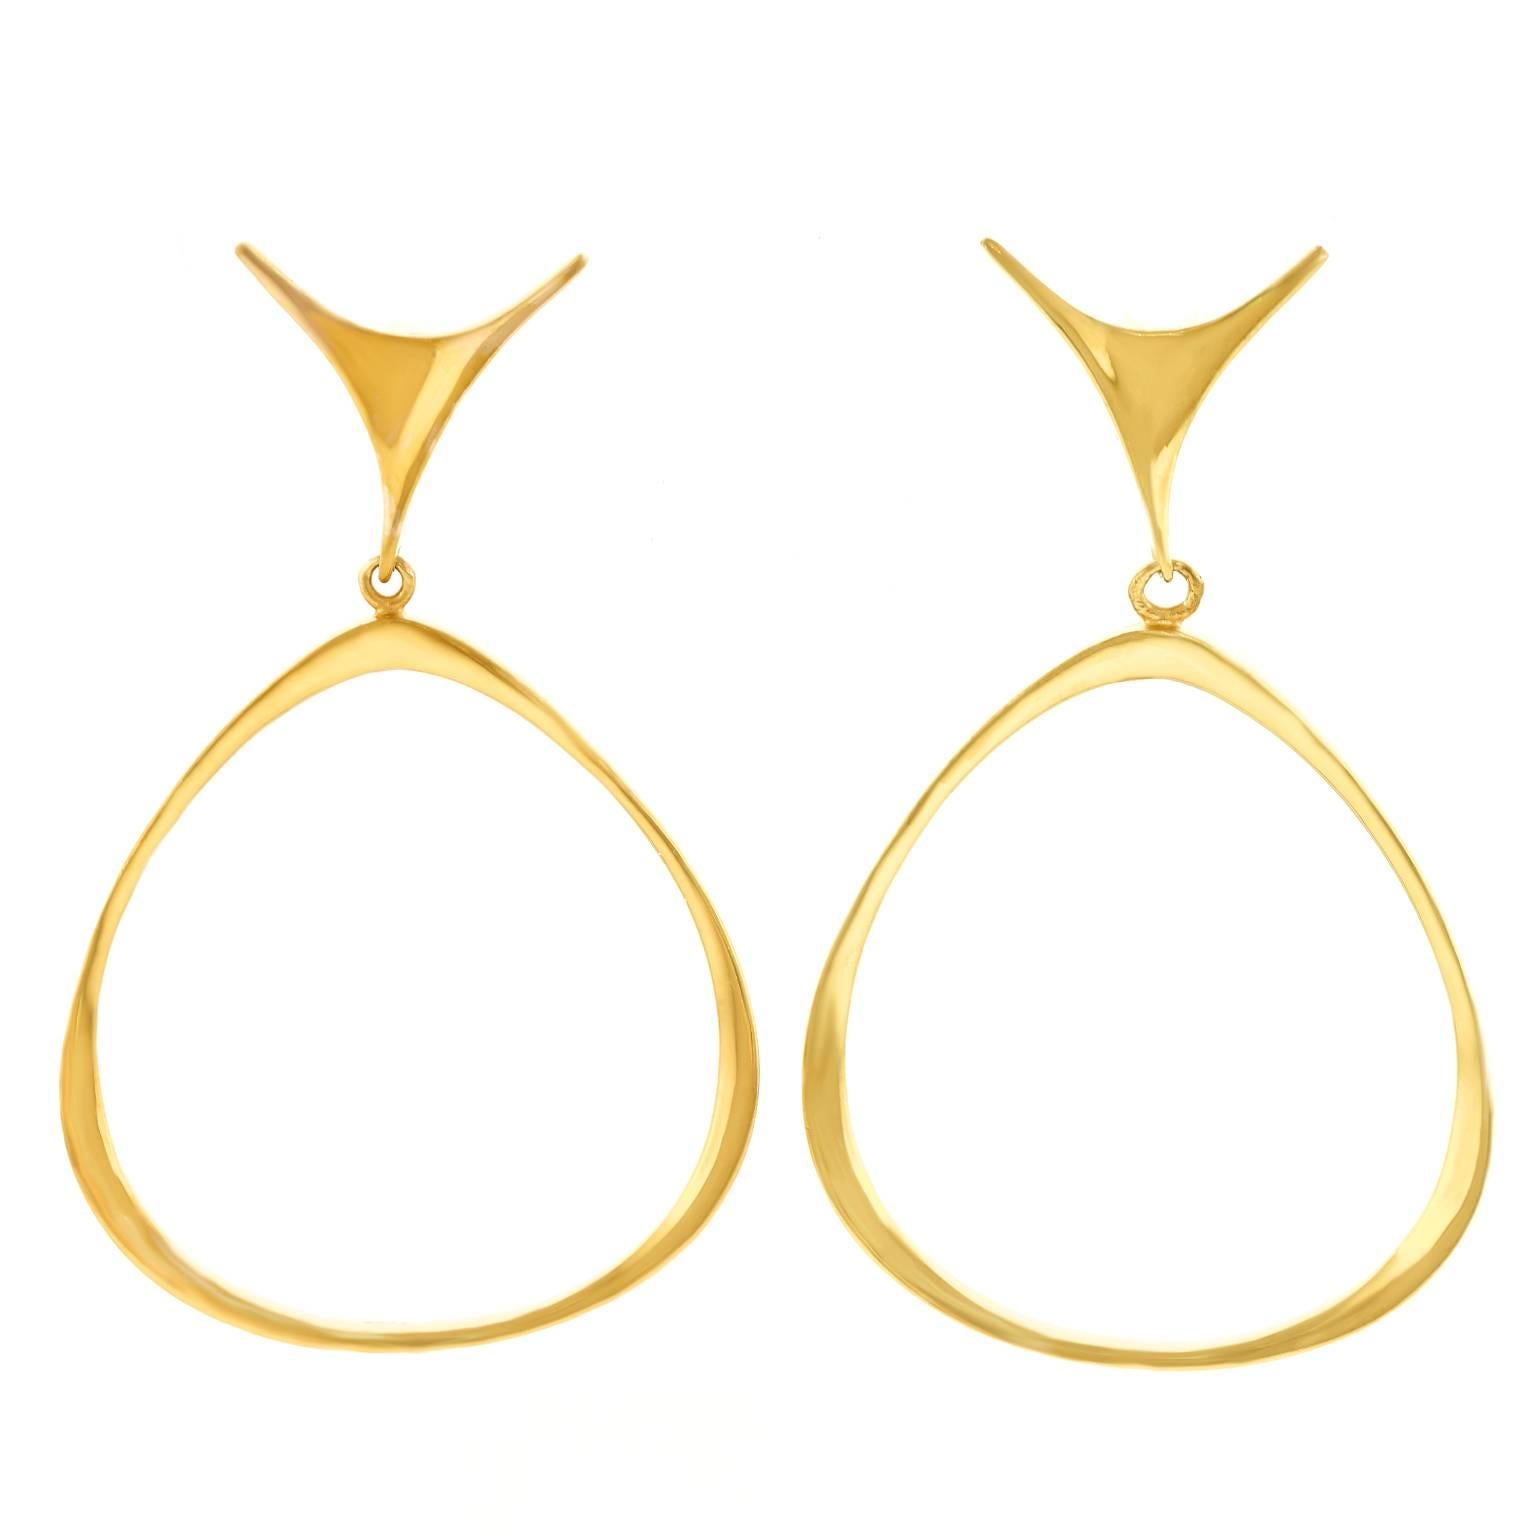 Fabulous Modernist Gold Hoop Earrings by Ed Wiener